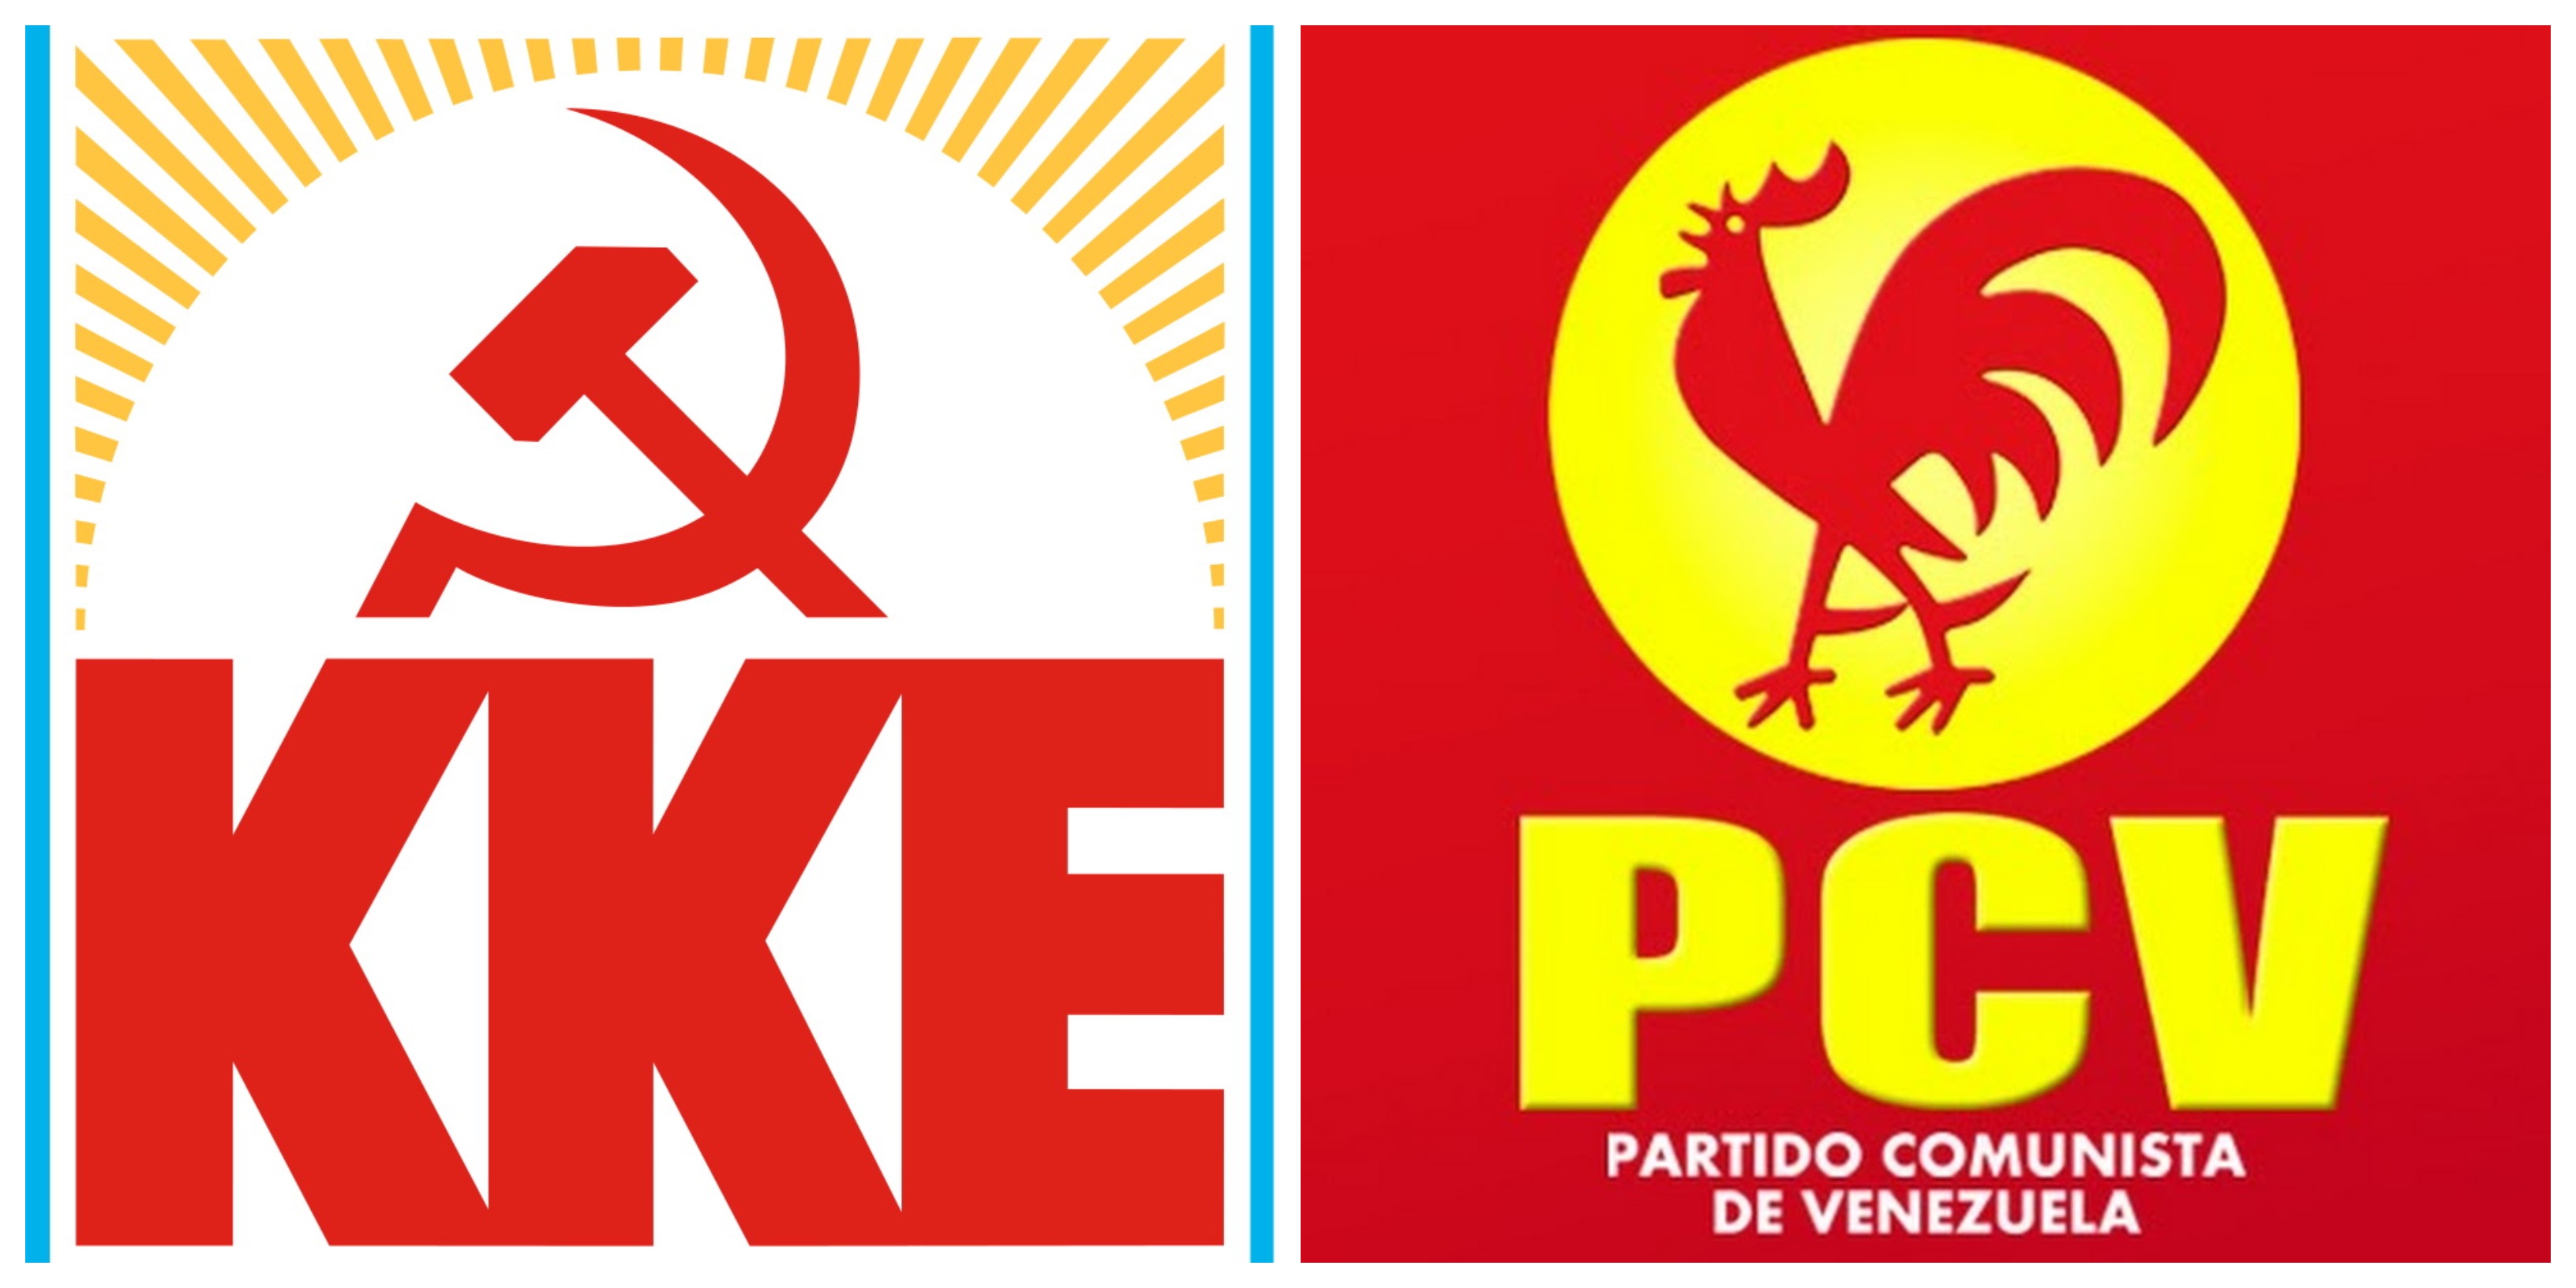 ΚΚΕ: Αλληλεγγύη στο Κομμουνιστικό Κόμμα Βενεζουέλας!